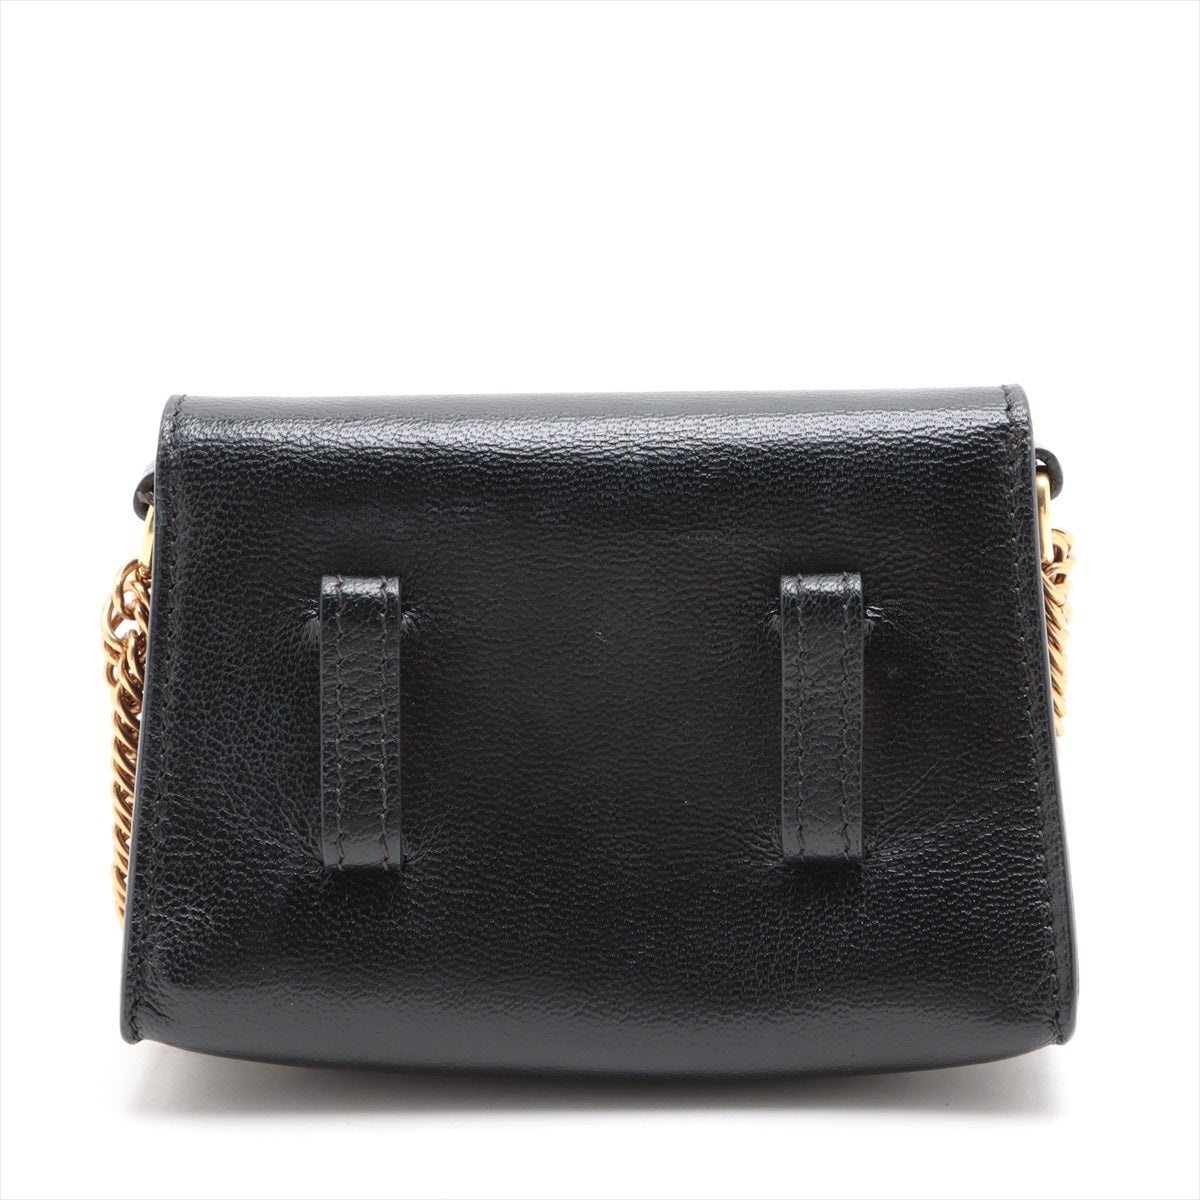 Givenchy Leather Chain Shoulder Bag Black